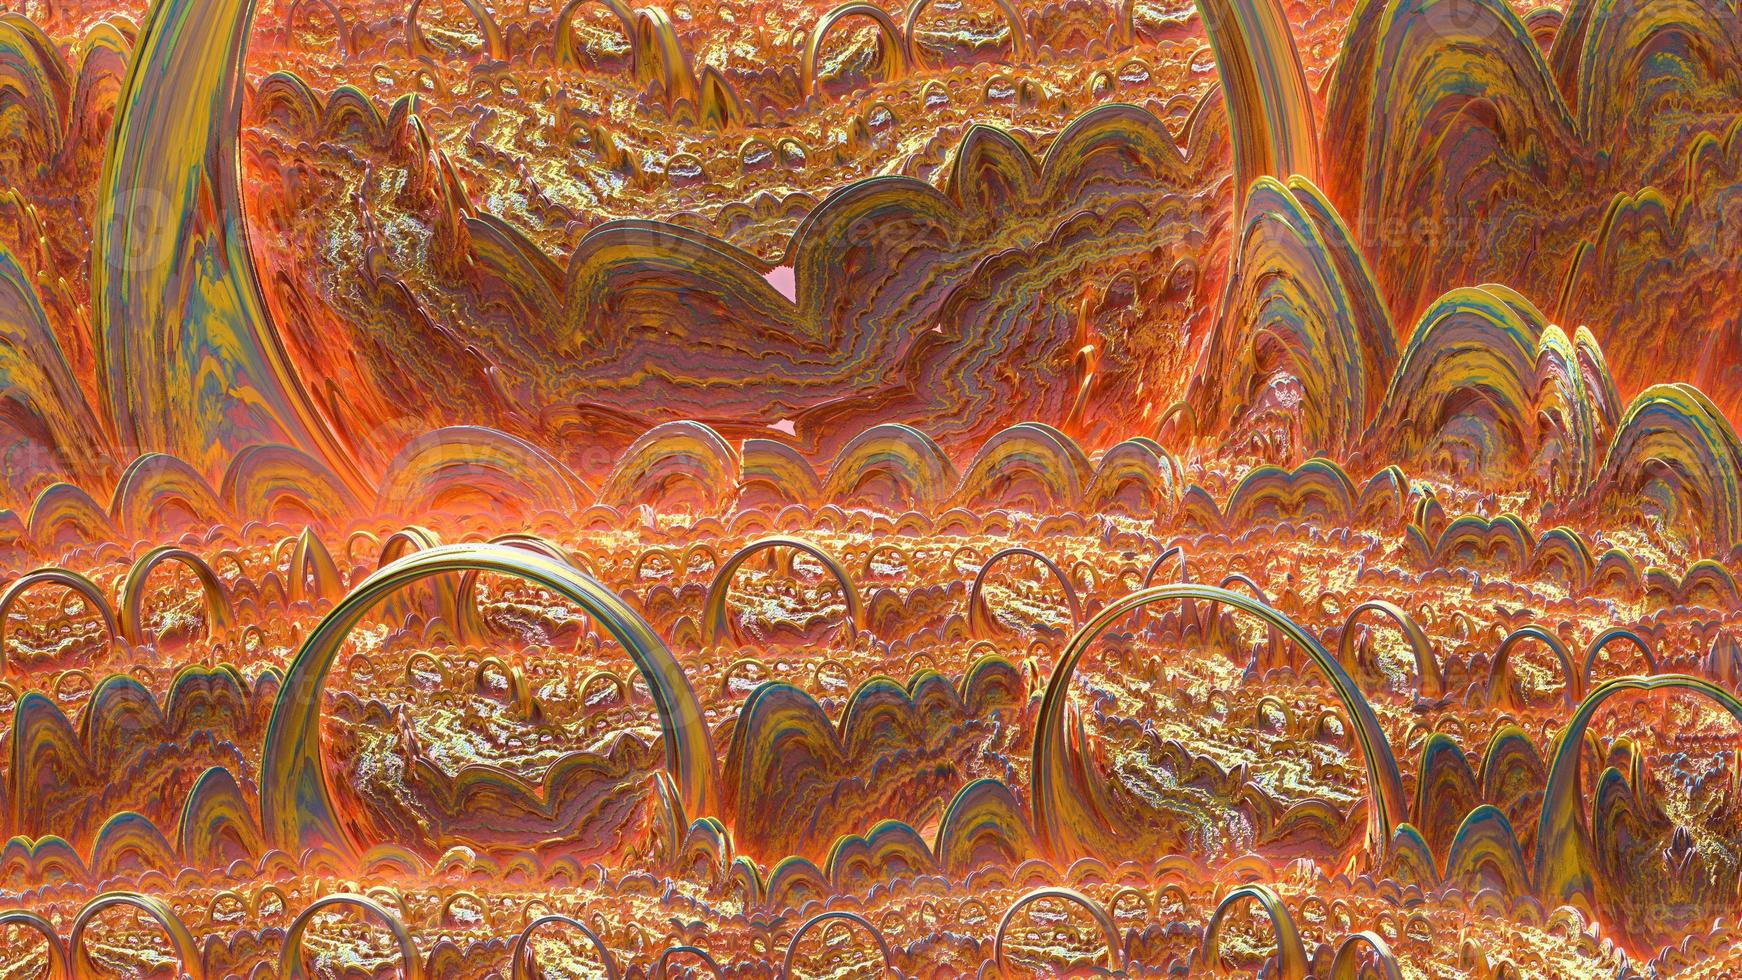 abstracte computer gegenereerde fractal ontwerp. 3d aliens illustratie van een mooie oneindige wiskundige mandelbrot set fractal abstract lava background foto